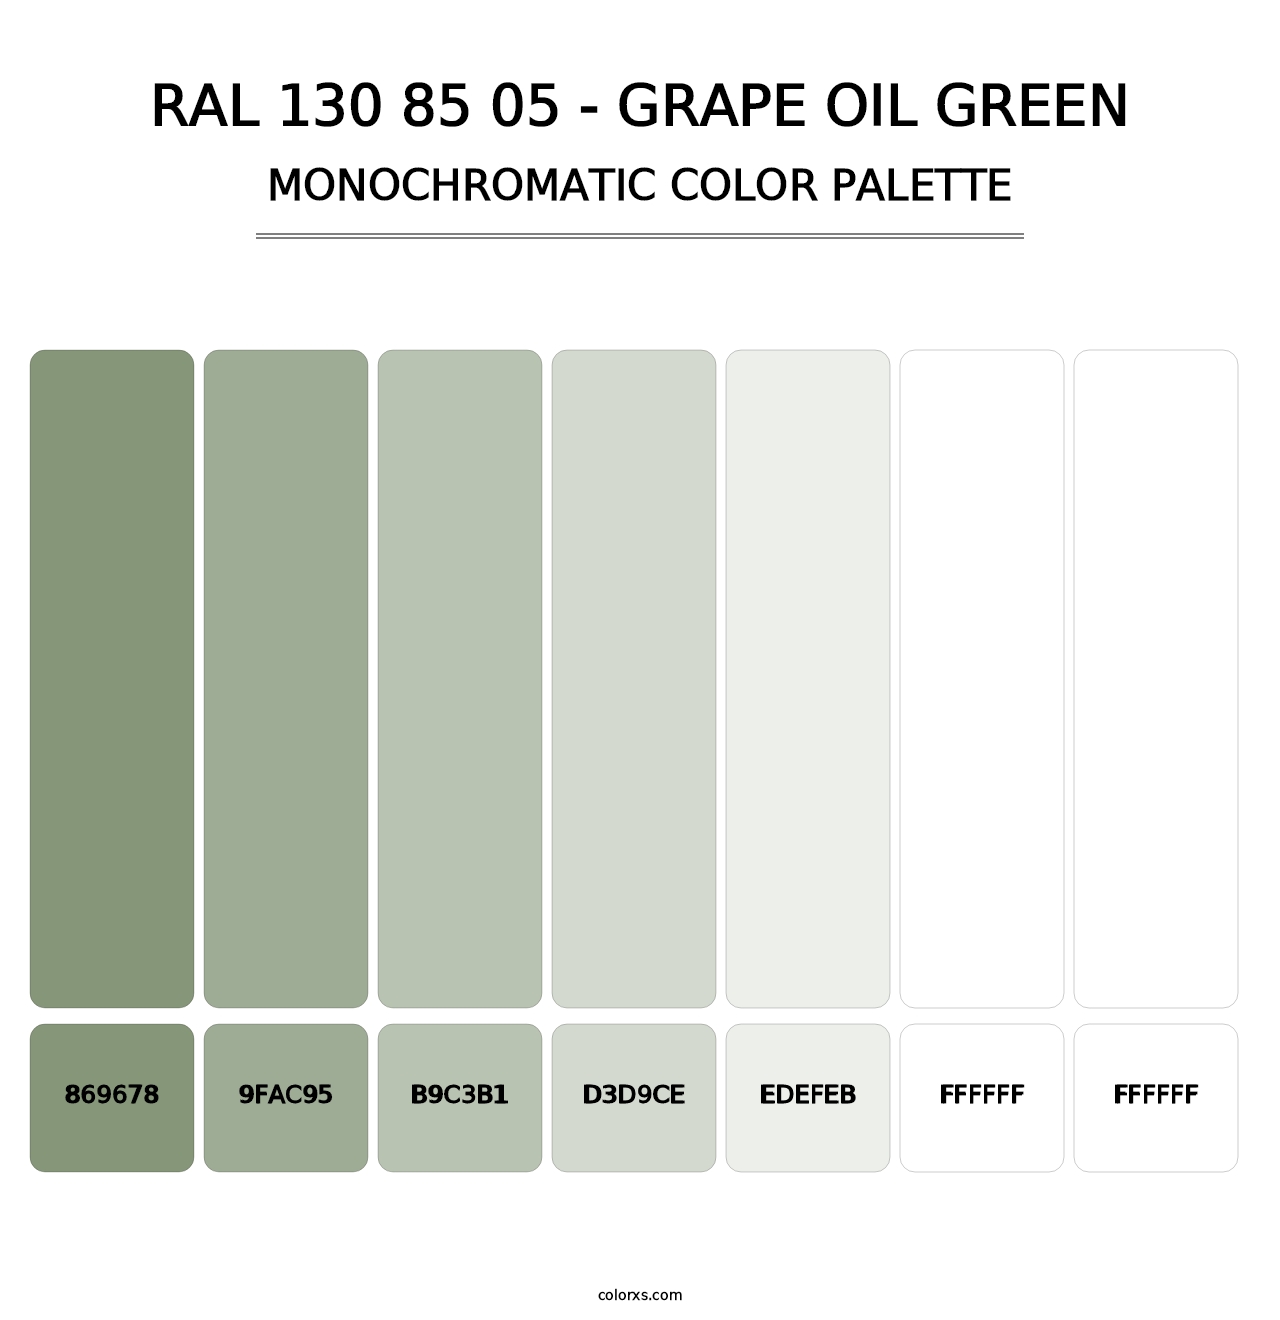 RAL 130 85 05 - Grape Oil Green - Monochromatic Color Palette